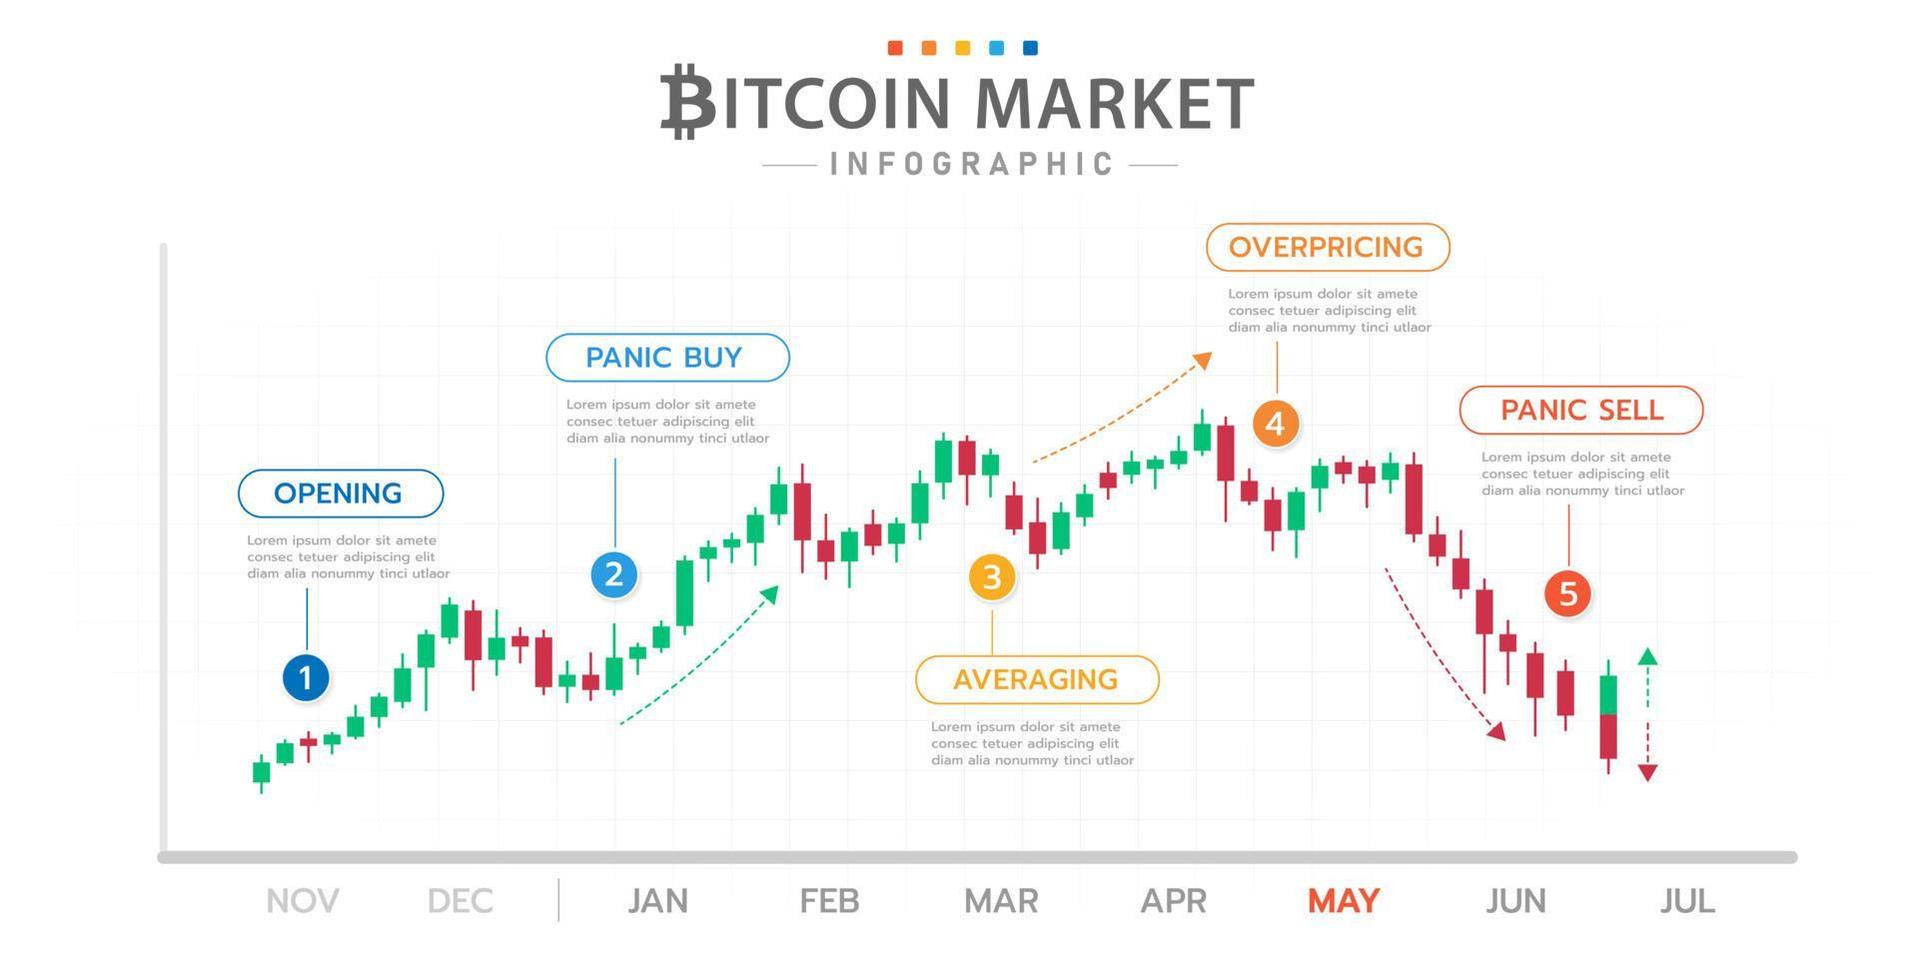 modèle d'infographie pour les entreprises. diagramme de chronologie bitcoin avec phases de marché, infographie de présentation de crypto-monnaie. vecteur